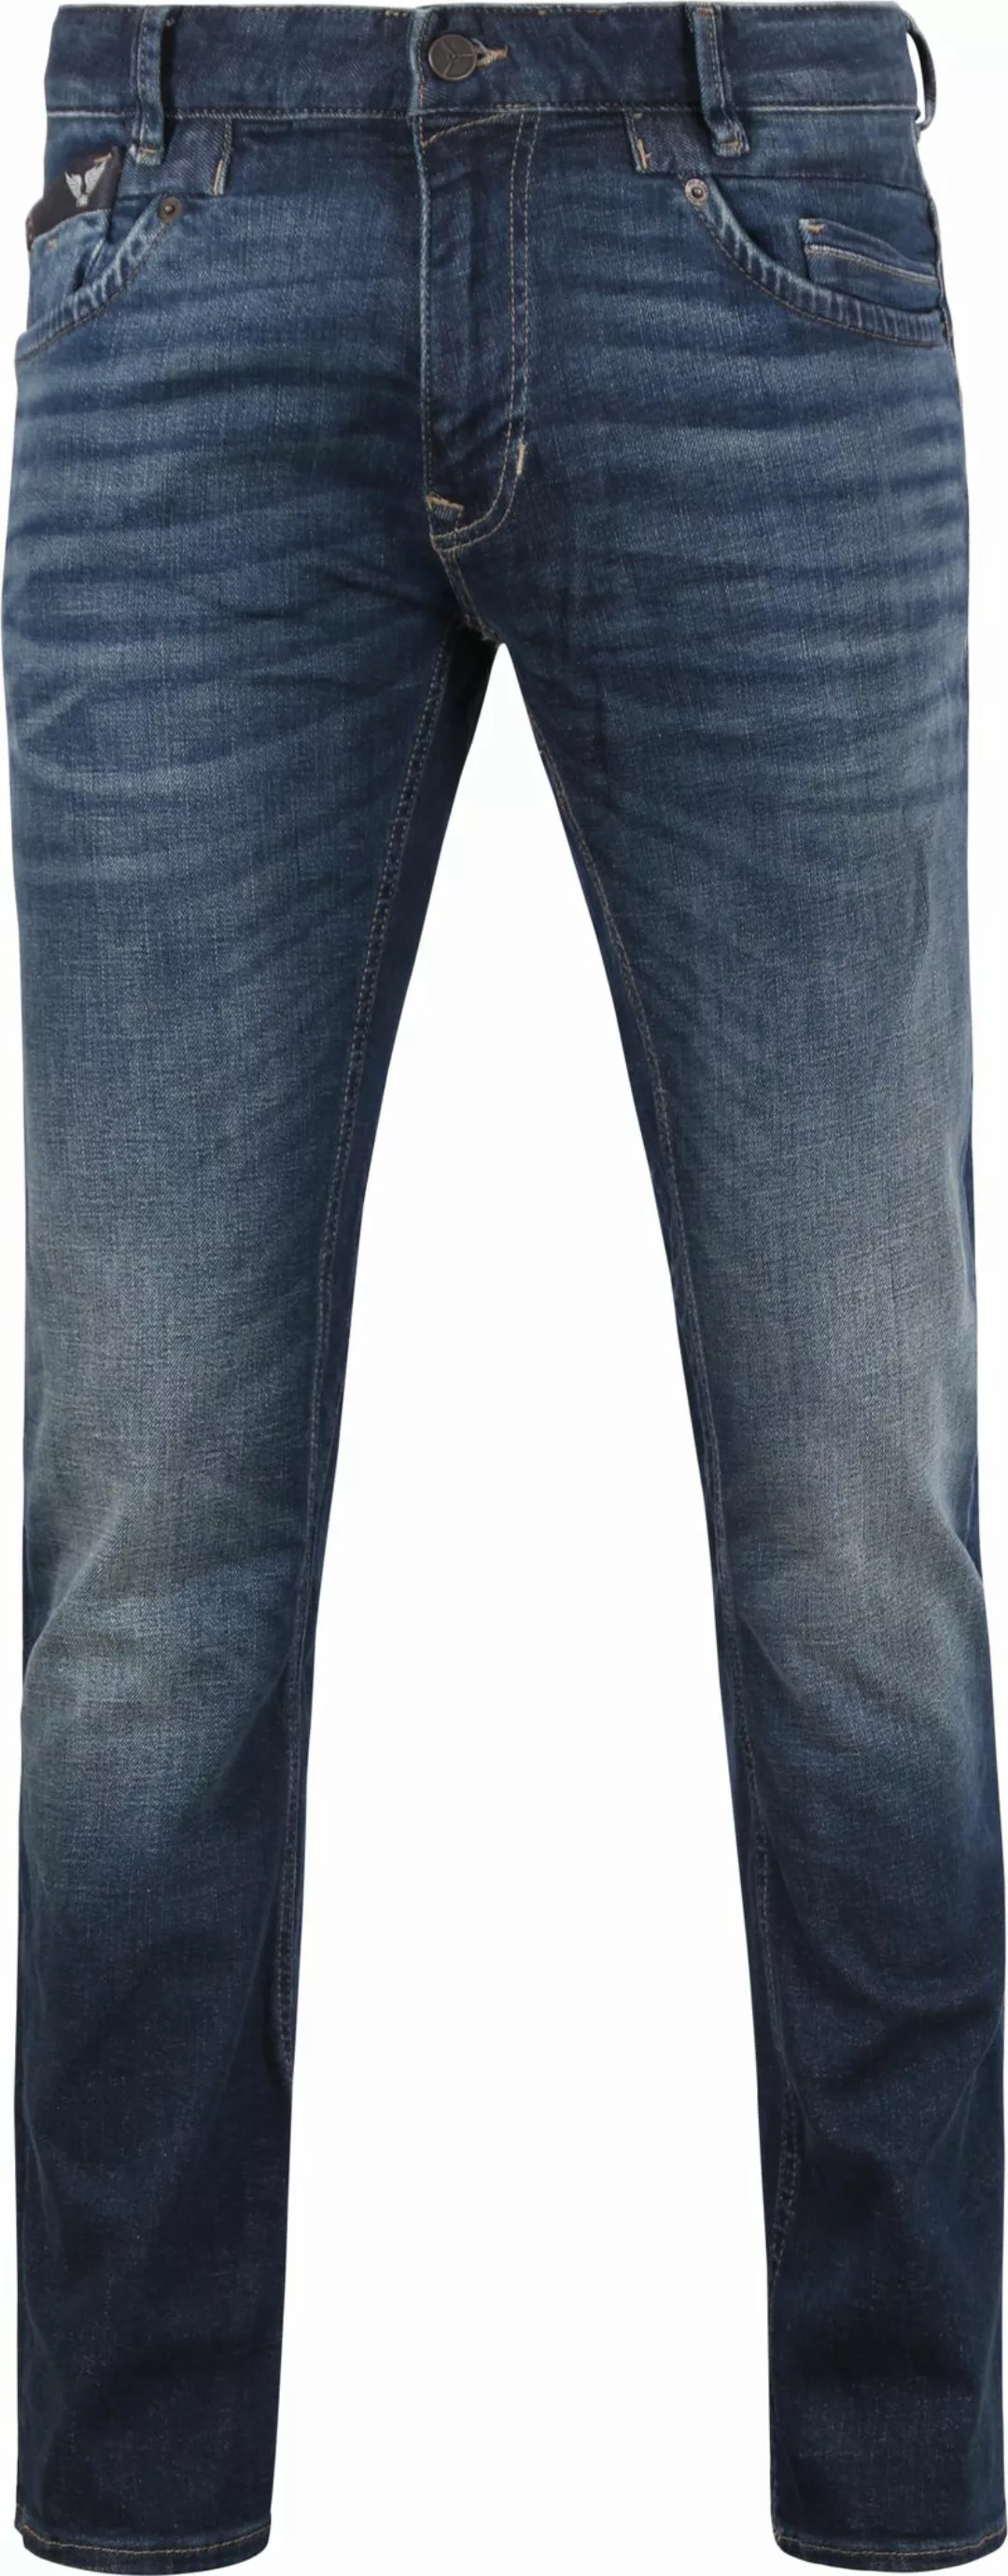 PME Legend Commander 3.0 Jeans Blau DBF - Größe W 34 - L 34 günstig online kaufen